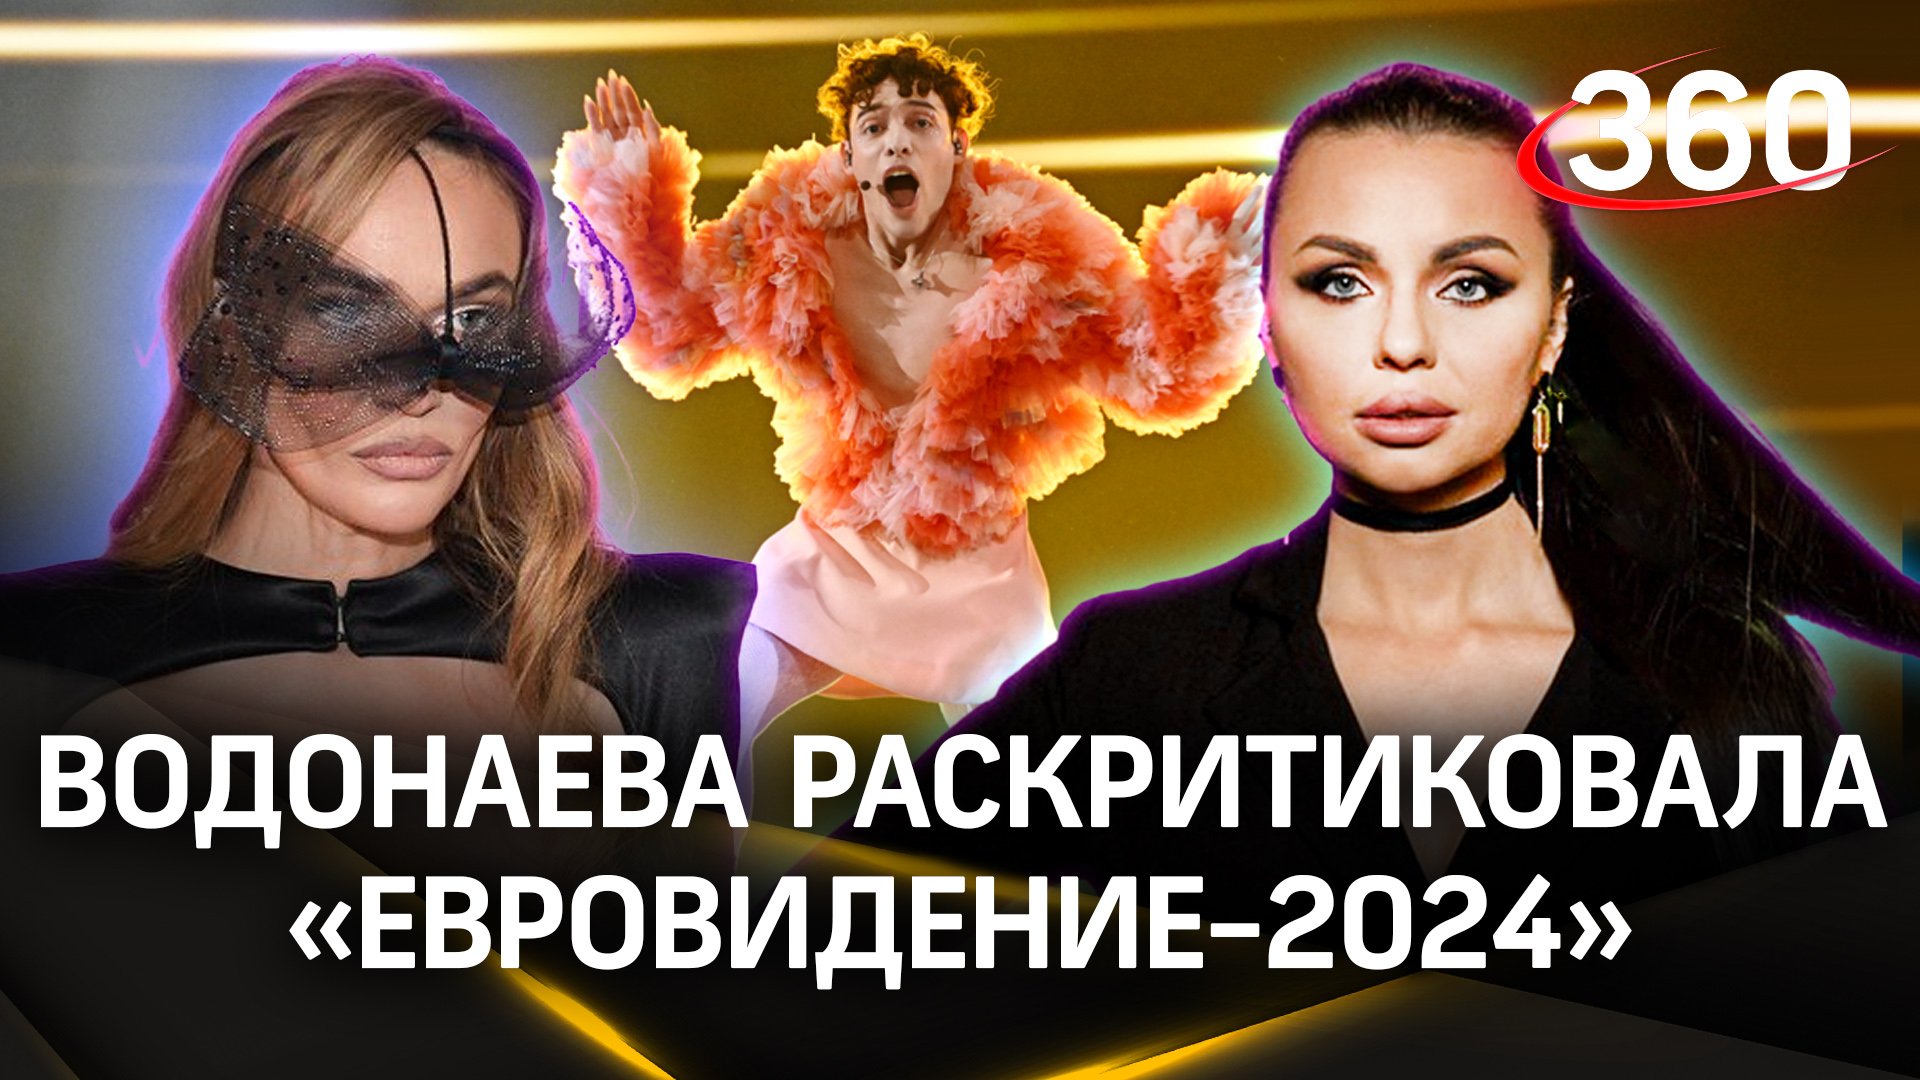 Алена Водонаева: «Никогда не следила за Евровидением - мне это абсолютно не интересно»